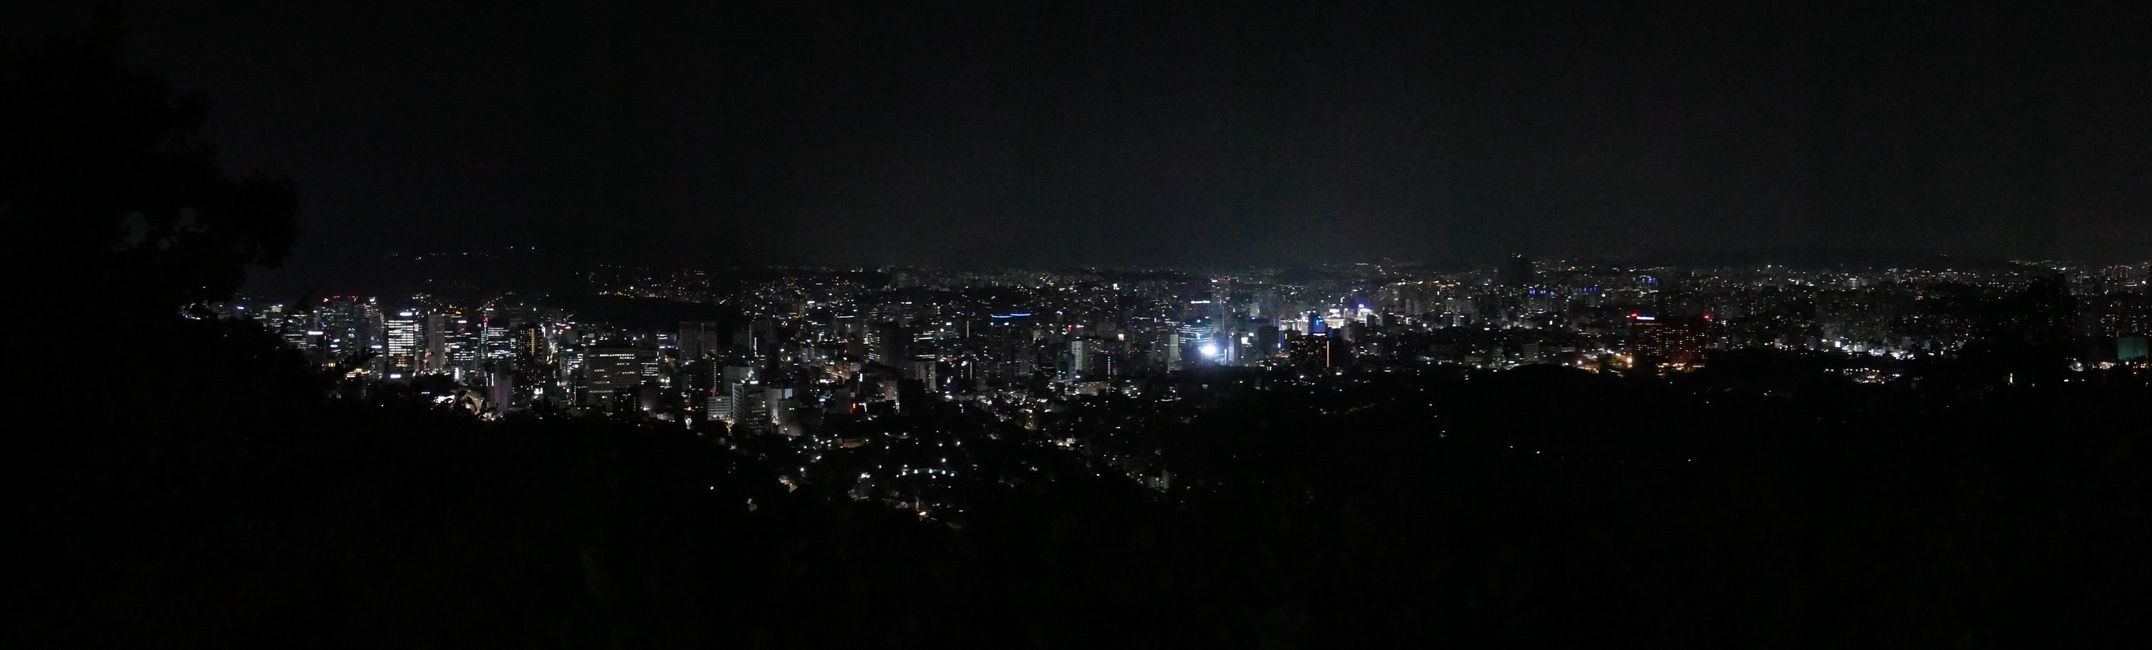 Die Südseite von Seoul bei Nacht